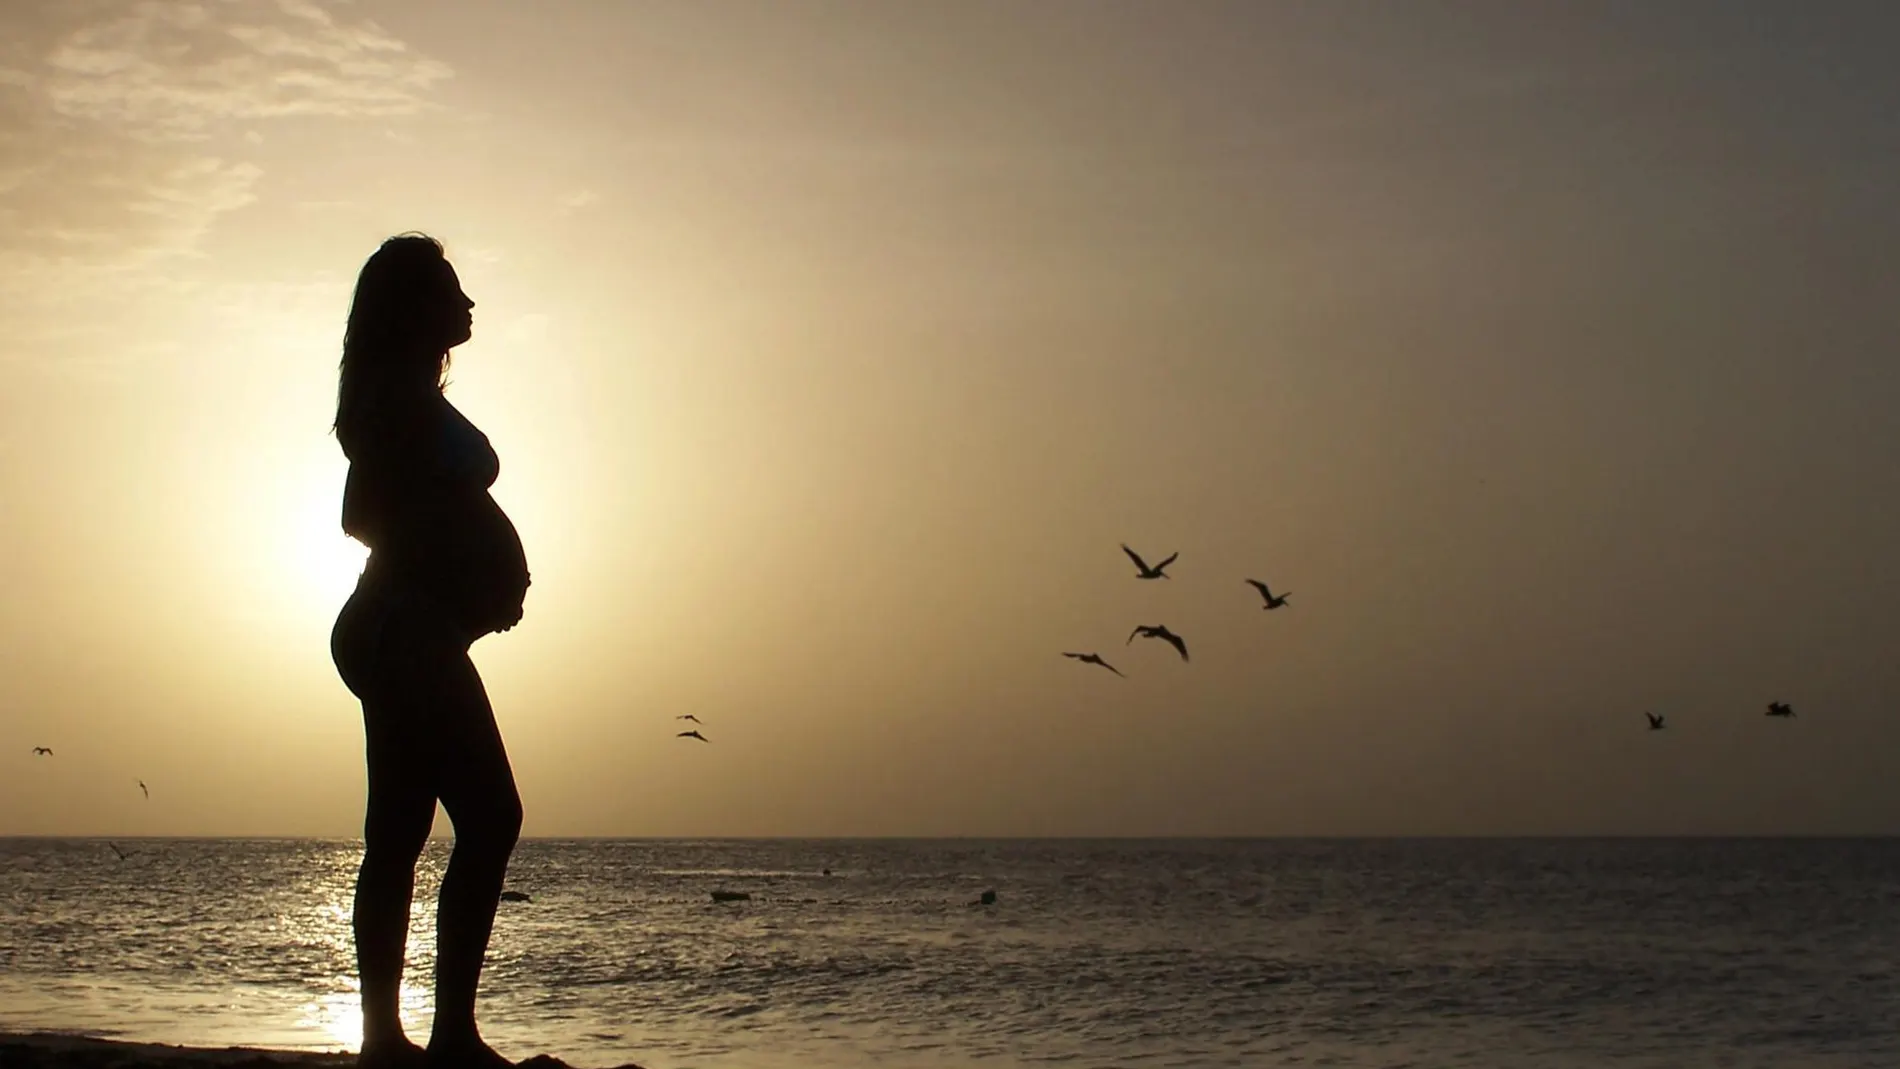 Una mujer embarazada en la orilla del mar